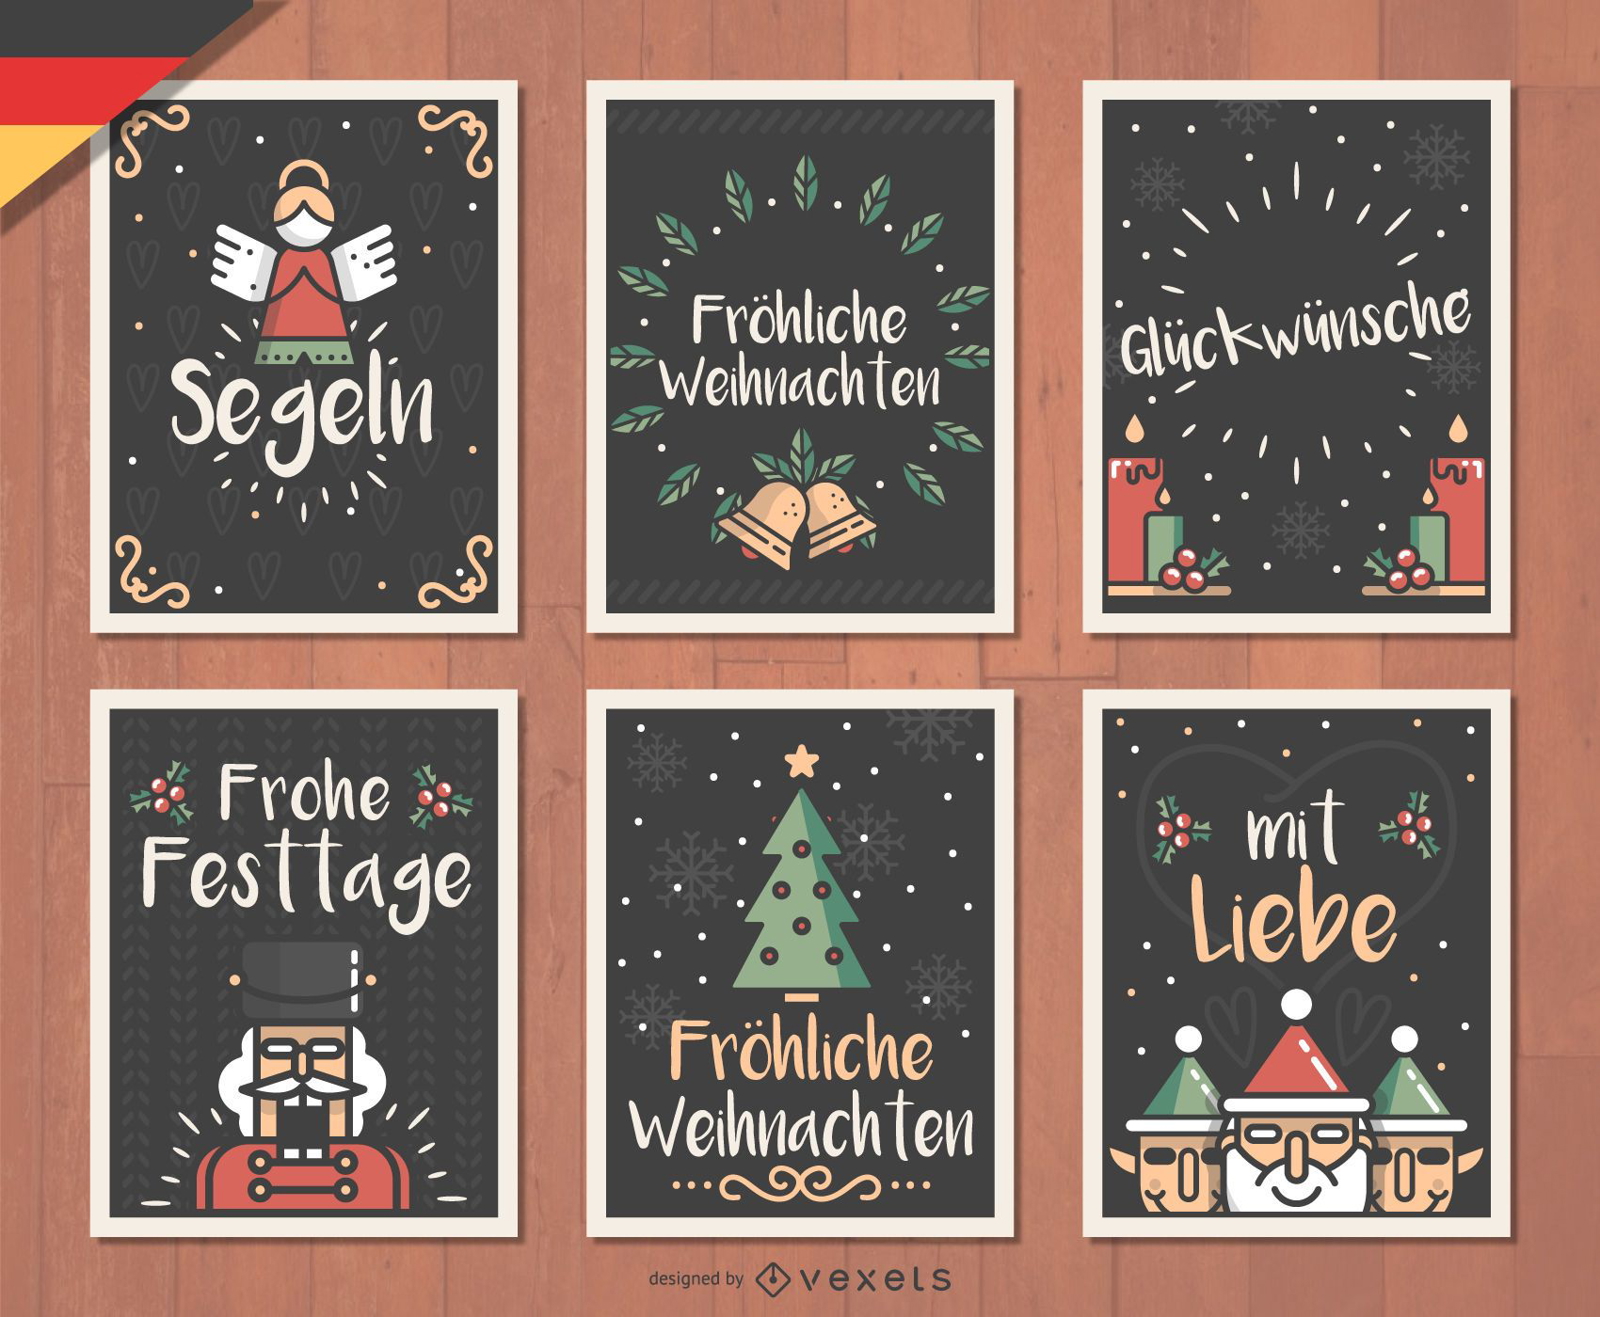 German Fröhliche Weihnachten Christmas card set